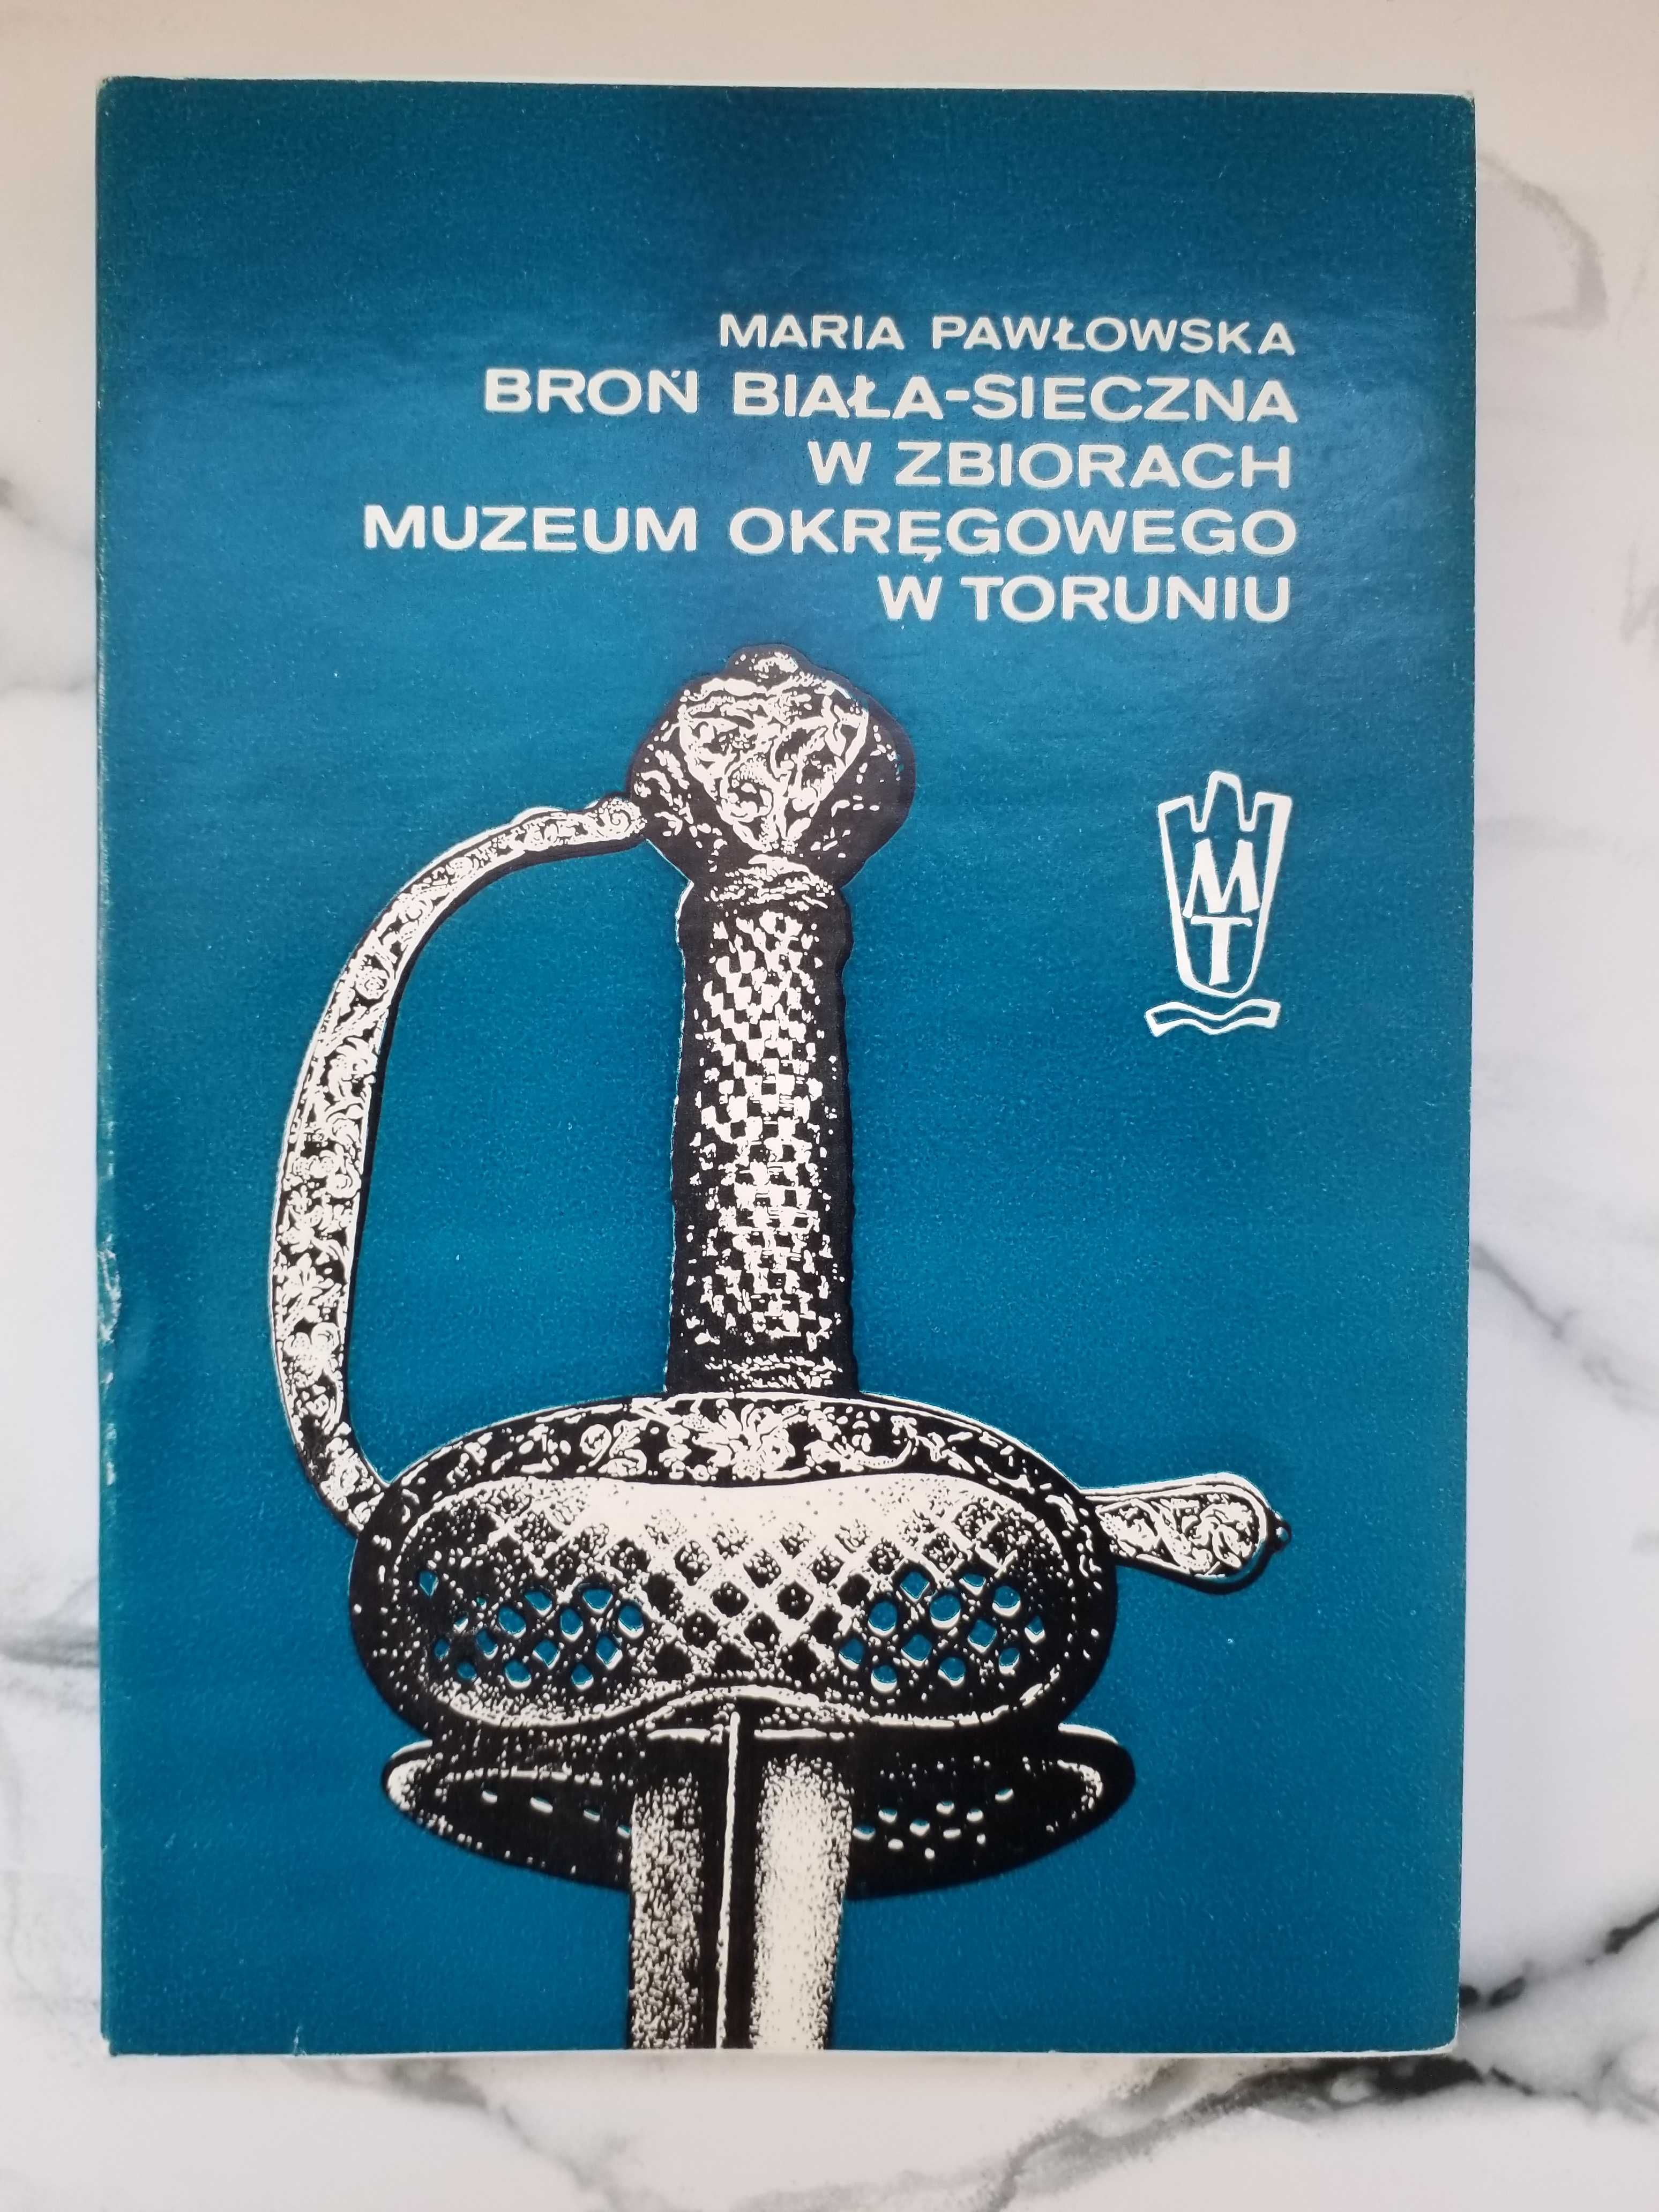 Broń biała-sieczna w zbiorach Muzeum Okręgowego w Toruniu